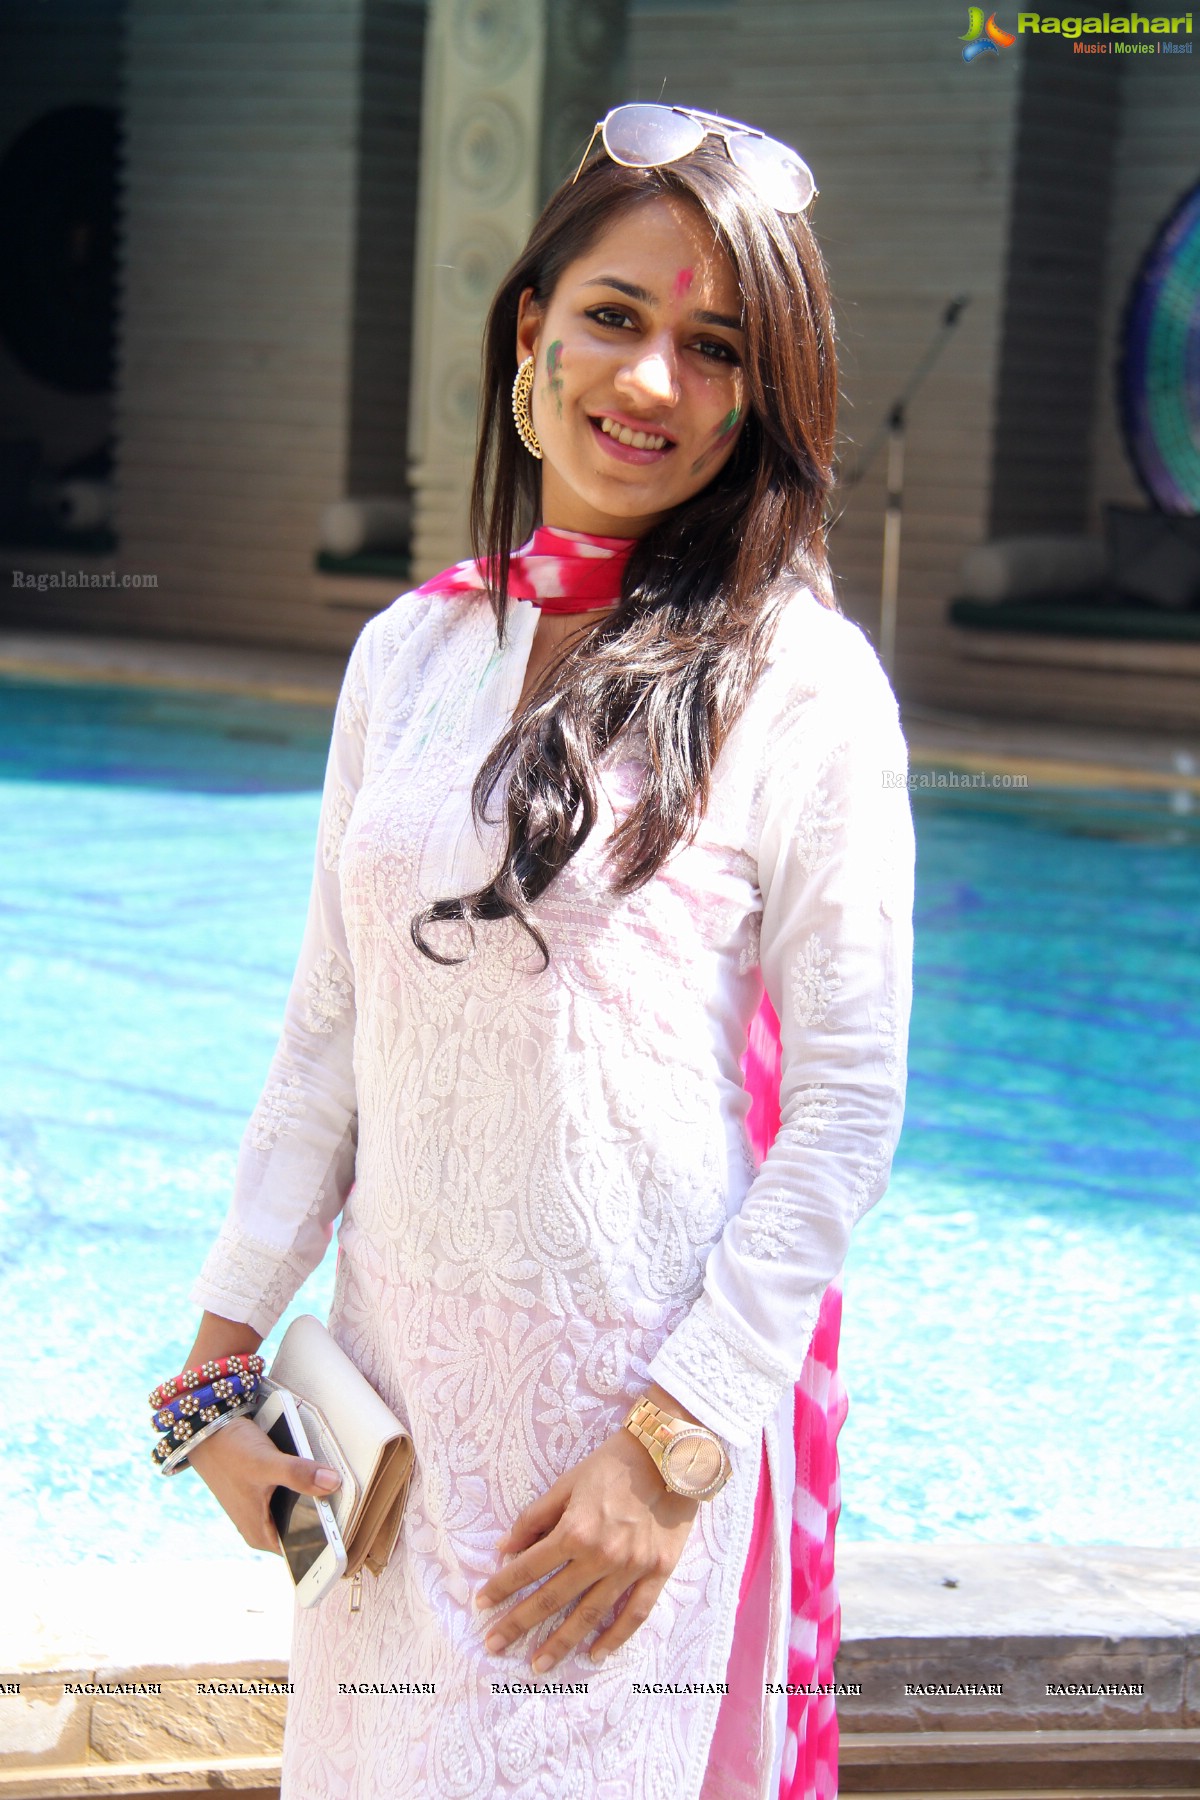 Stylish Divas Holi Bash 2014 and Pool Party, Hyderabad